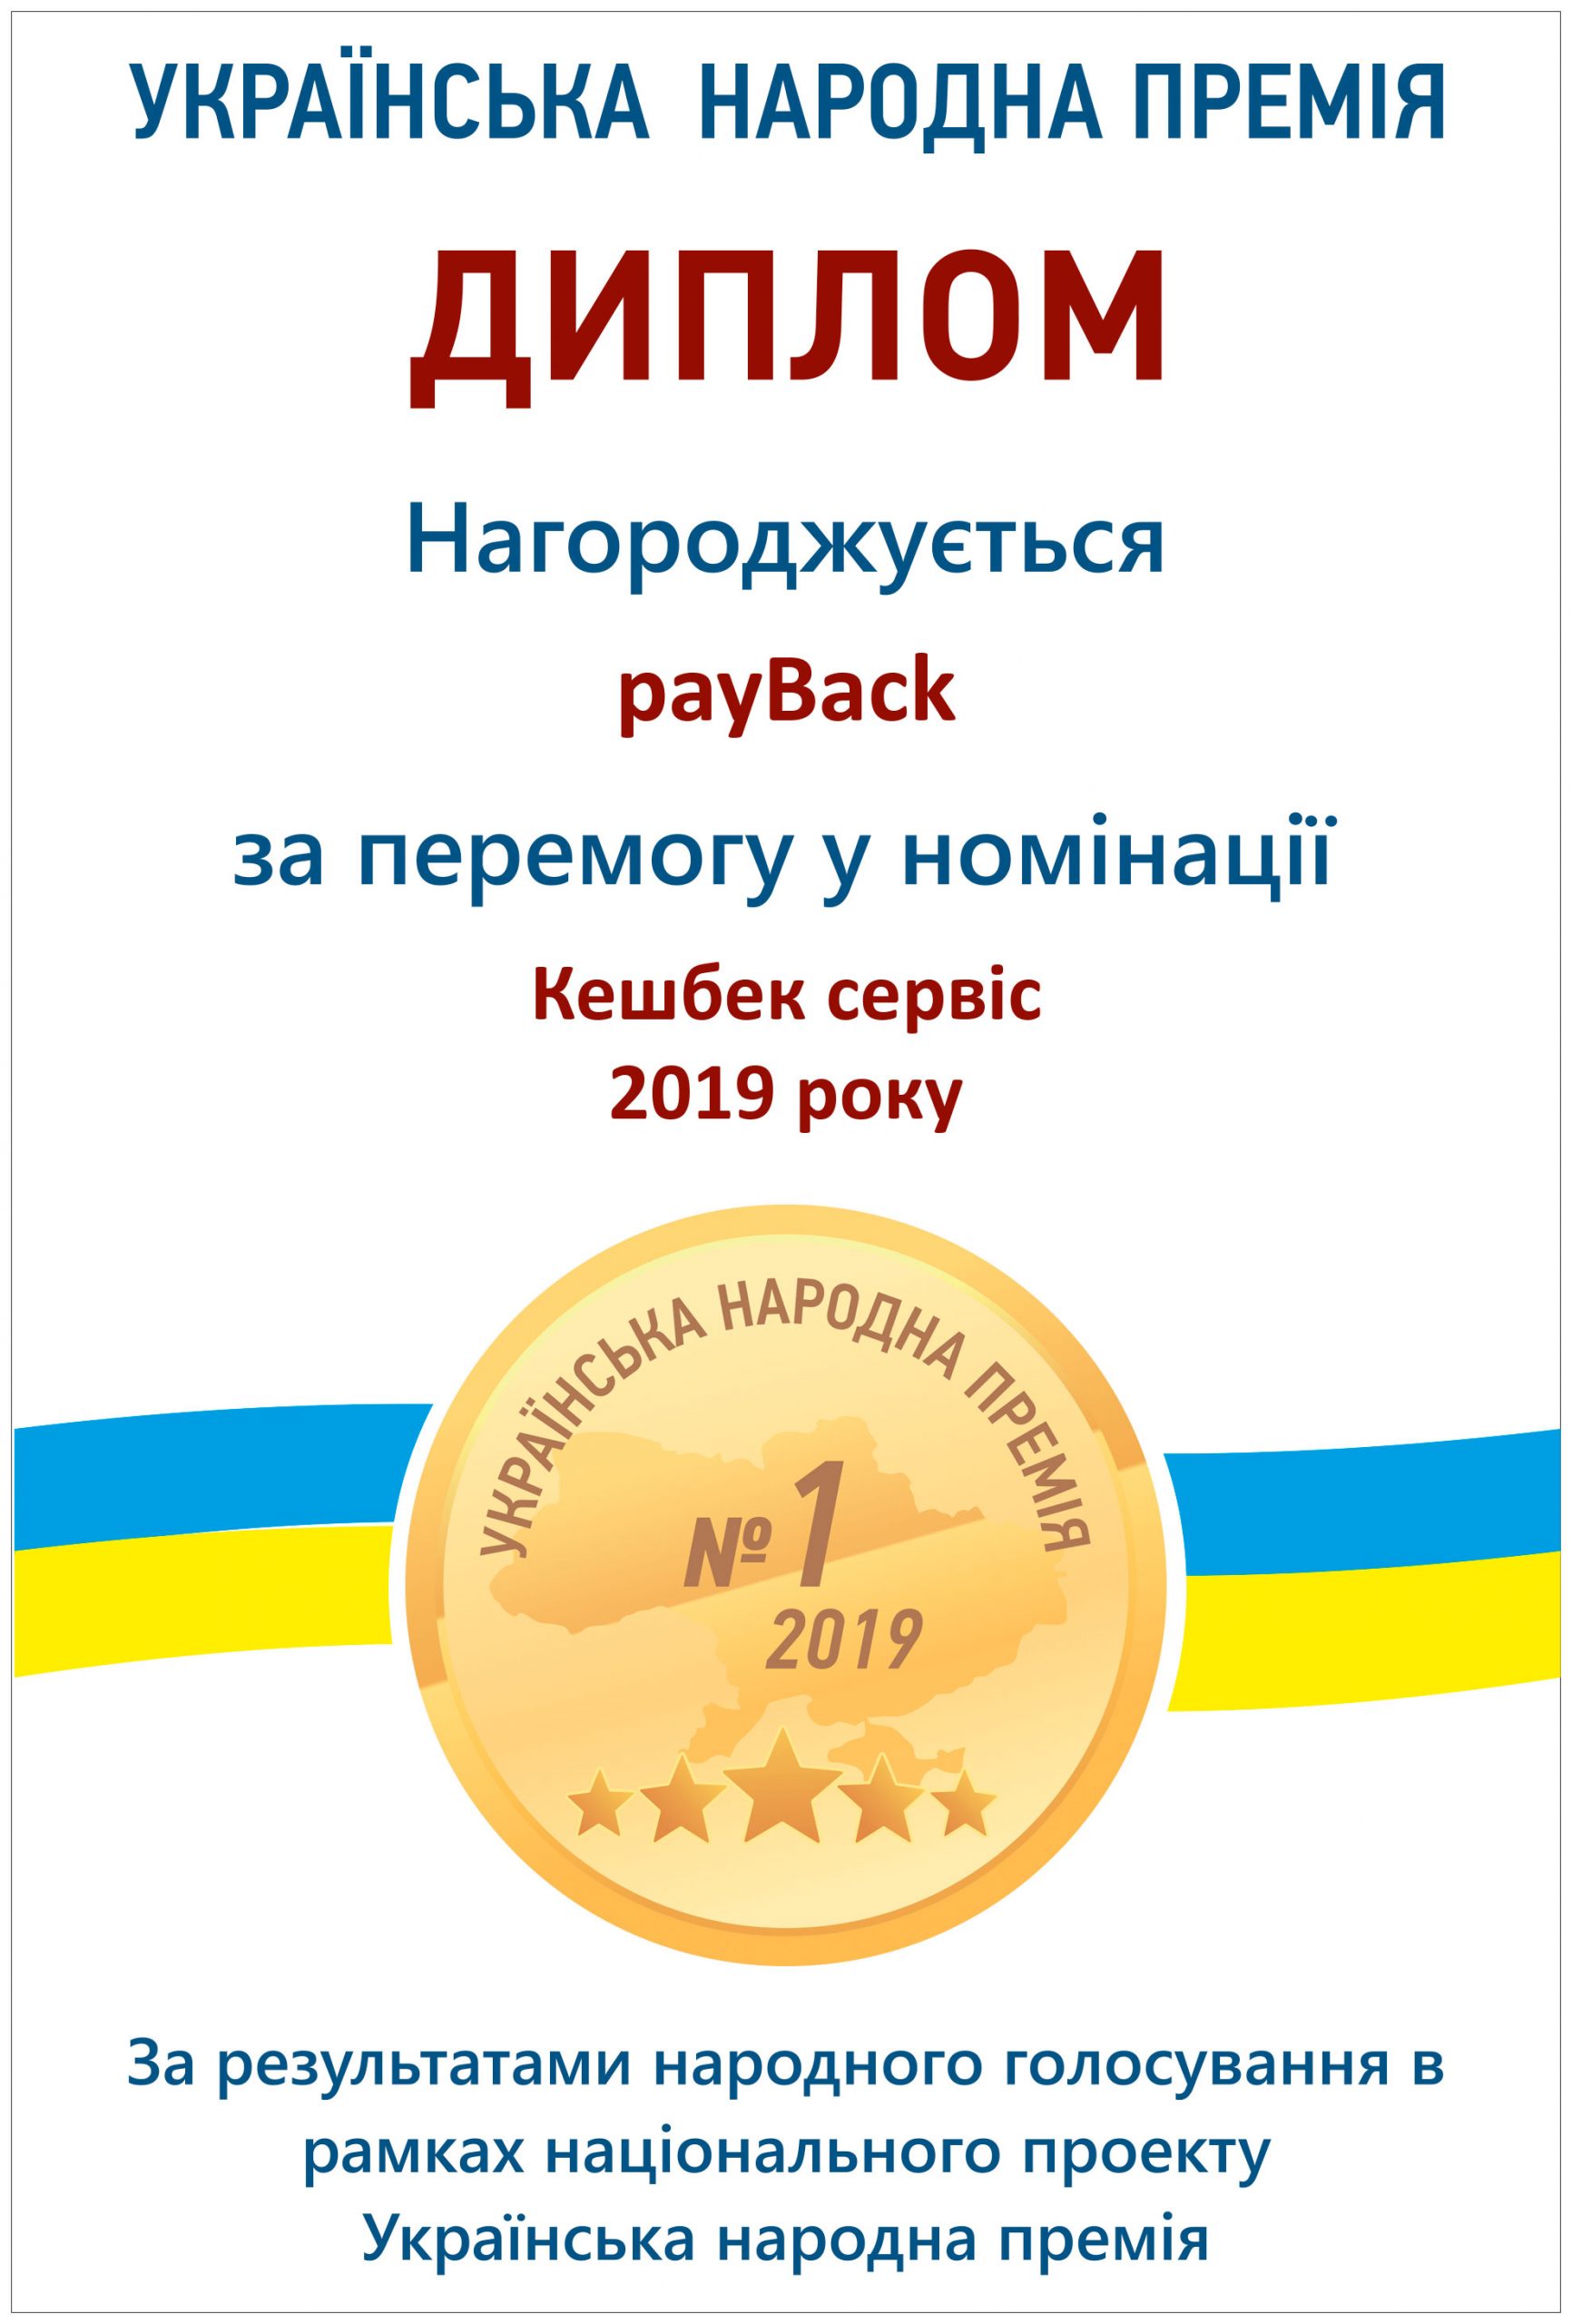 payBack - лучший кэшбэк-сервис 2018 года